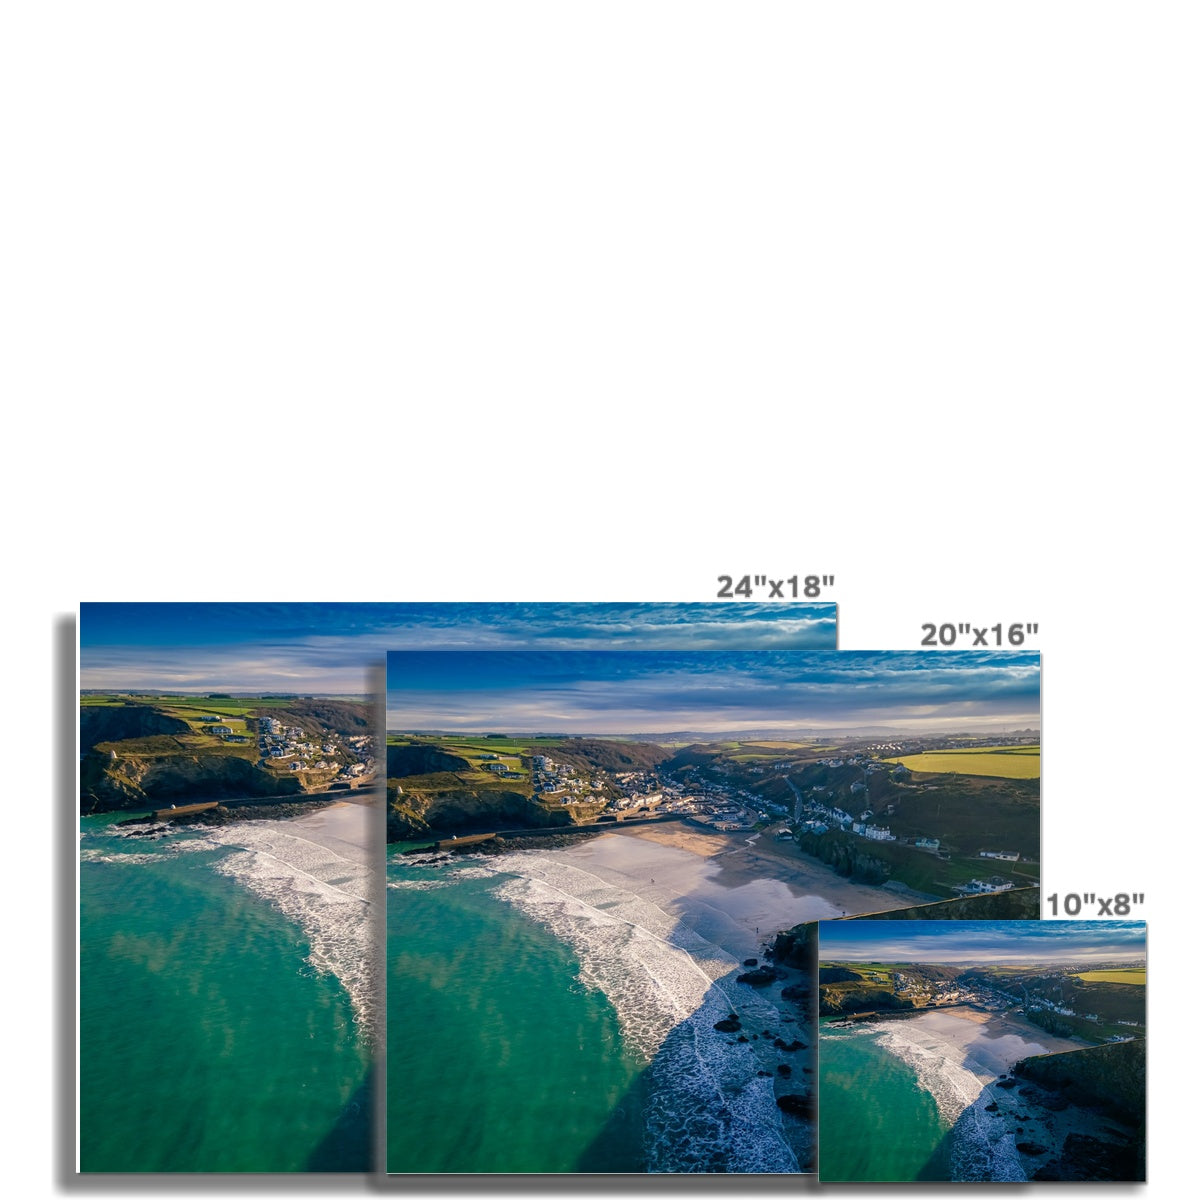 portreath beach picture sizes